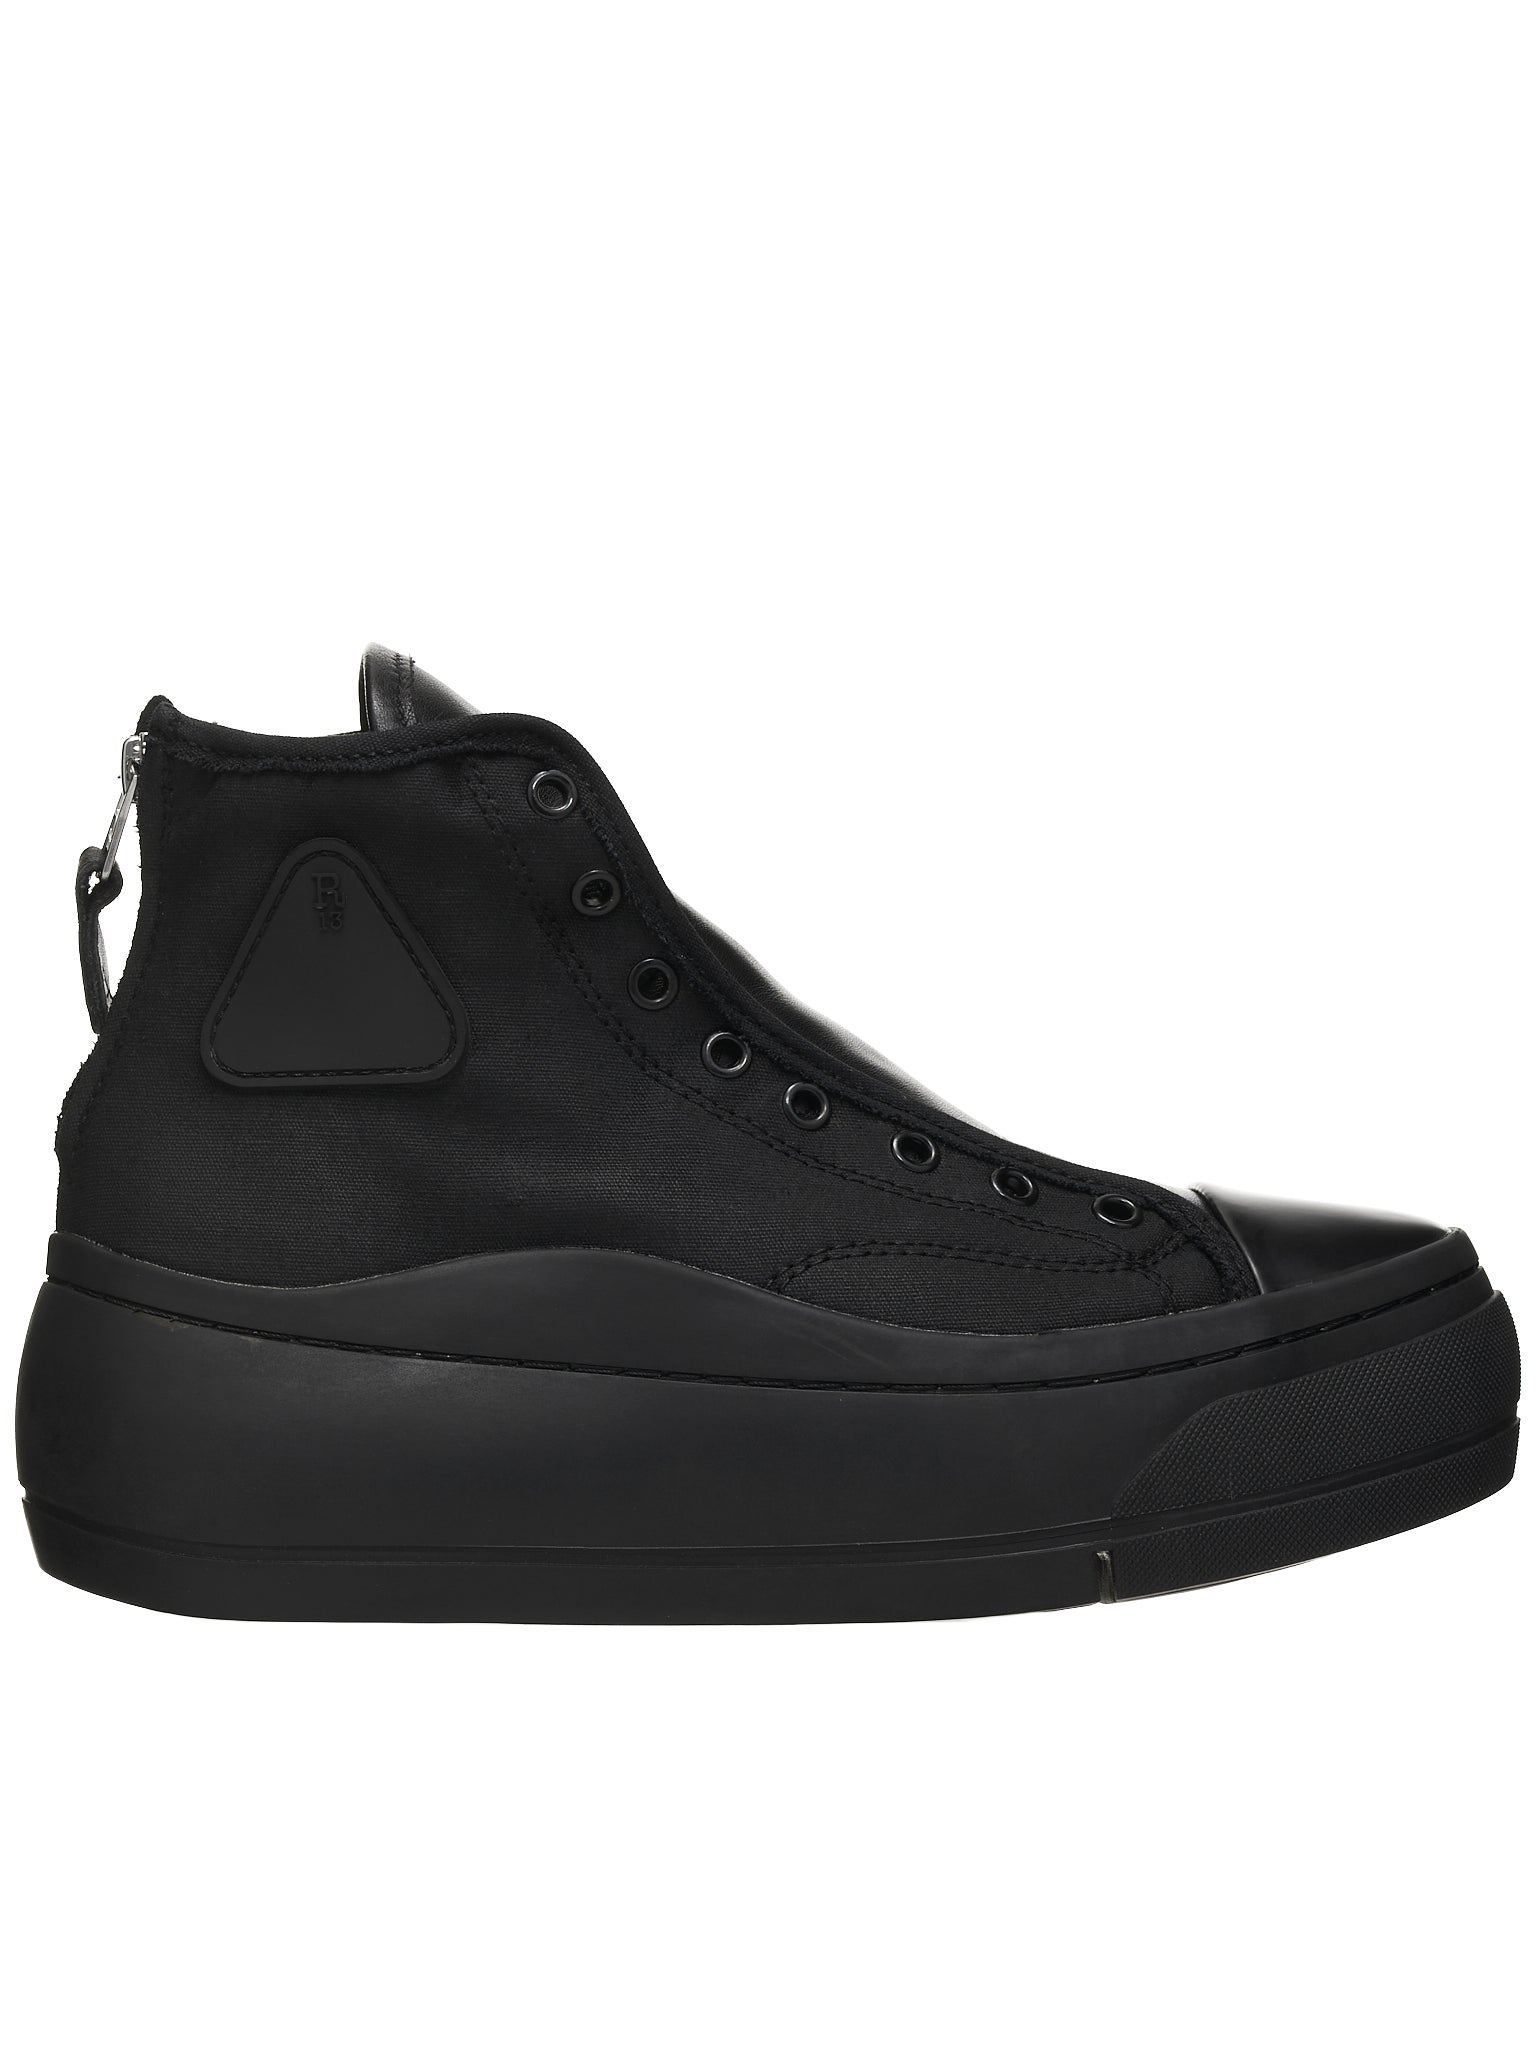 Kurt High Top Sneaker - Black